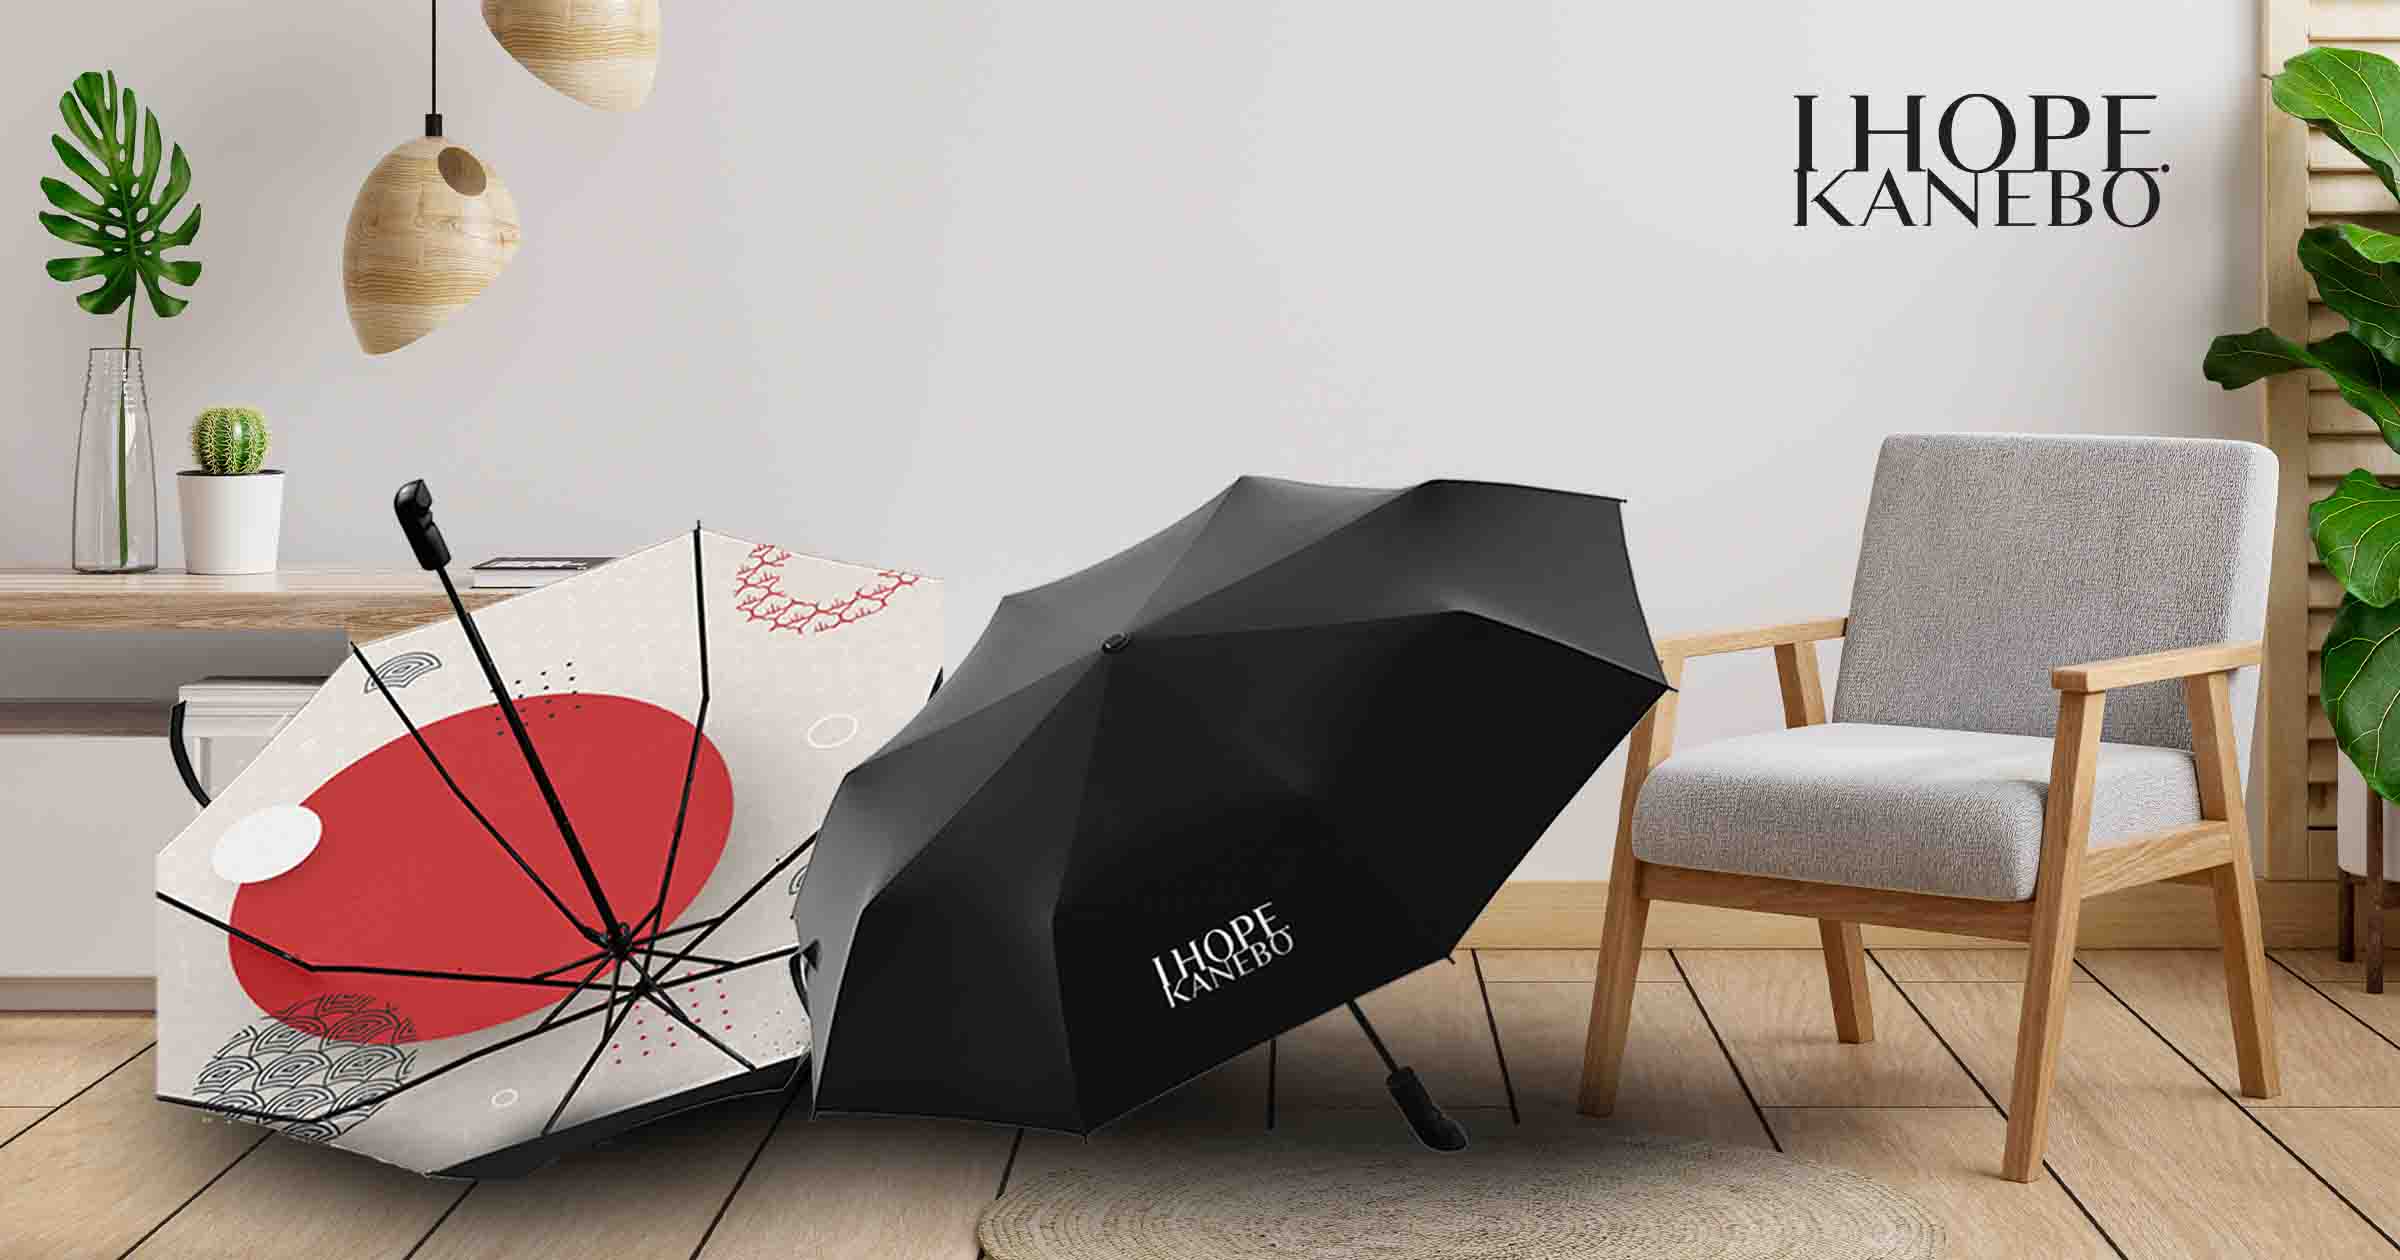 Kanebo Customised Umbrella